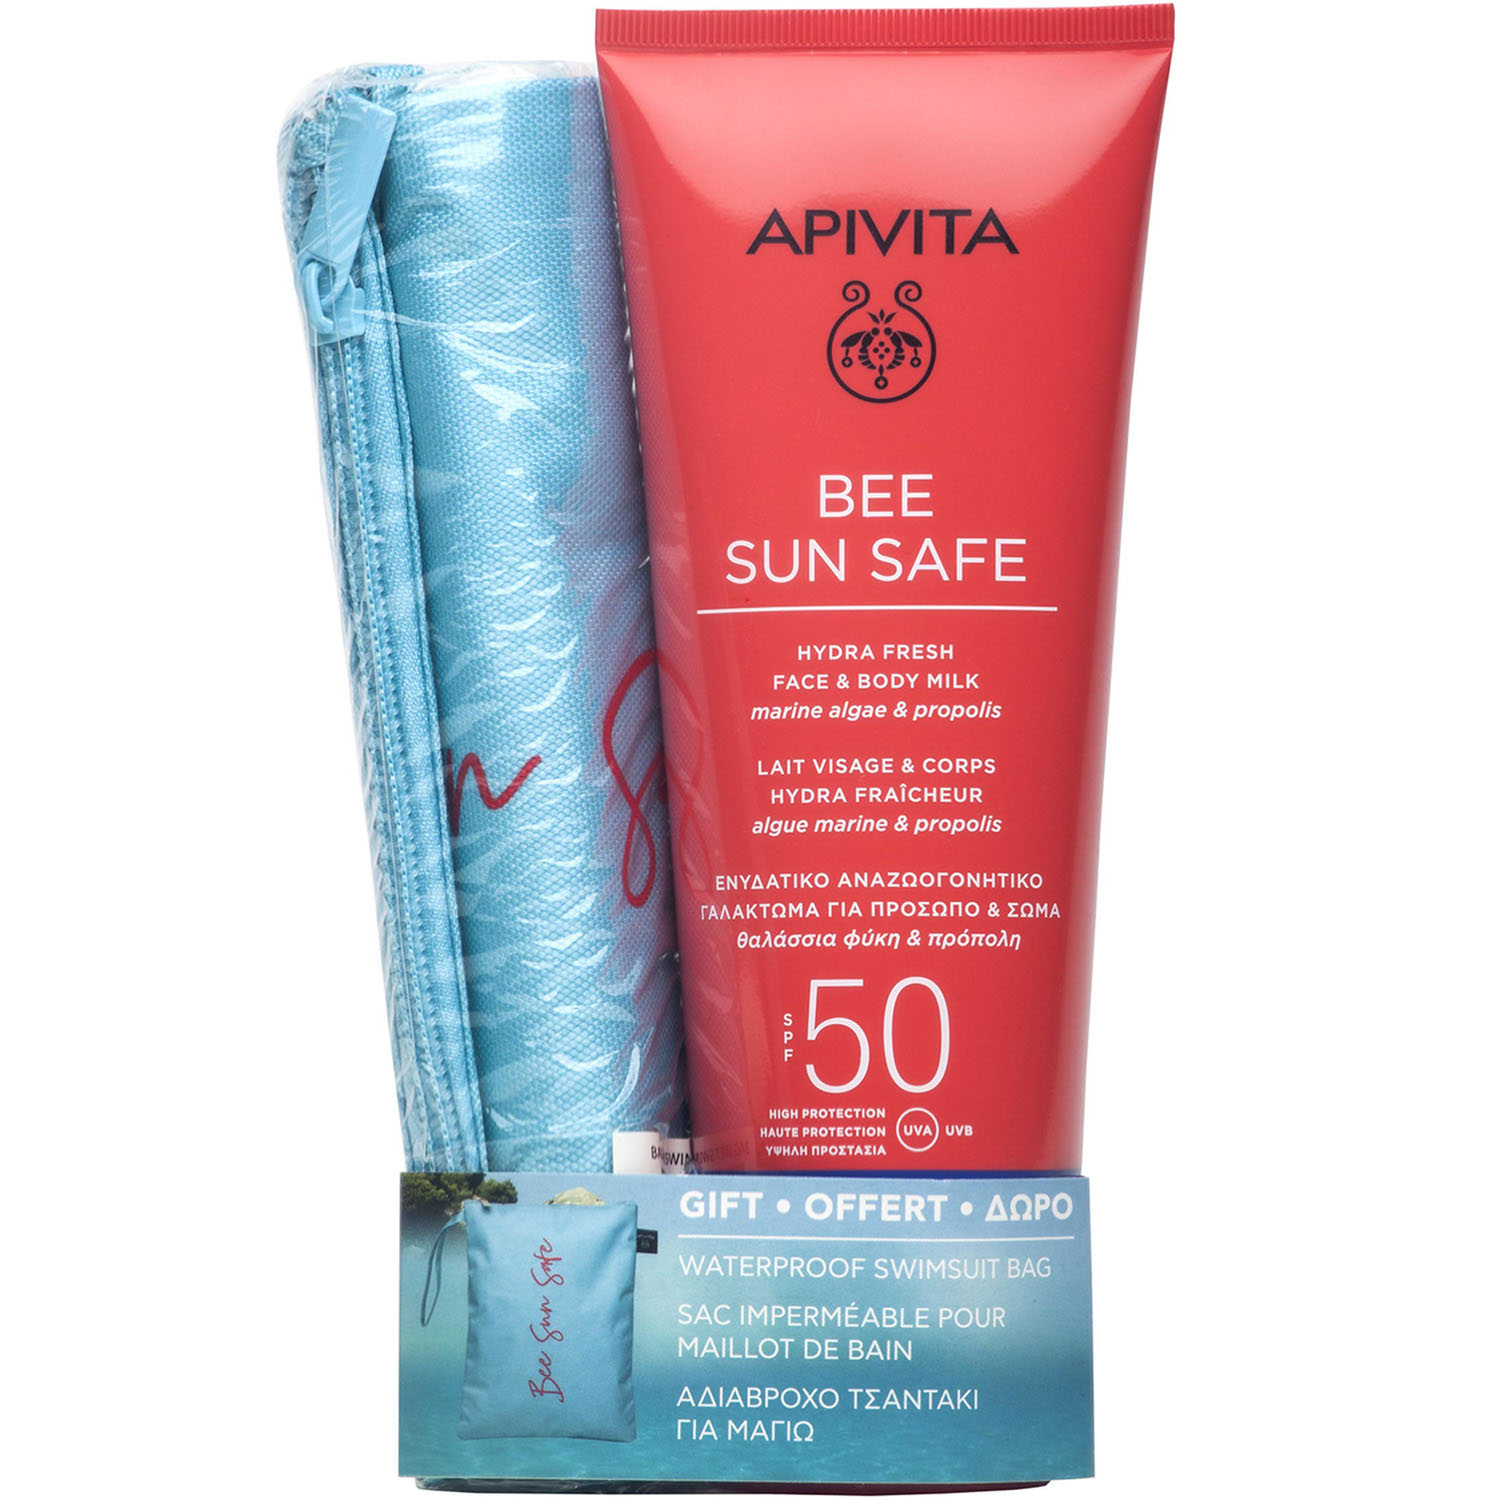 

Apivita Набор: солнцезащитное свежее увлажняющее молочко для лица и тела SPF 50 200 мл + мешочек для купальника (Apivita, Bee Sun Safe), Bee Sun Safe